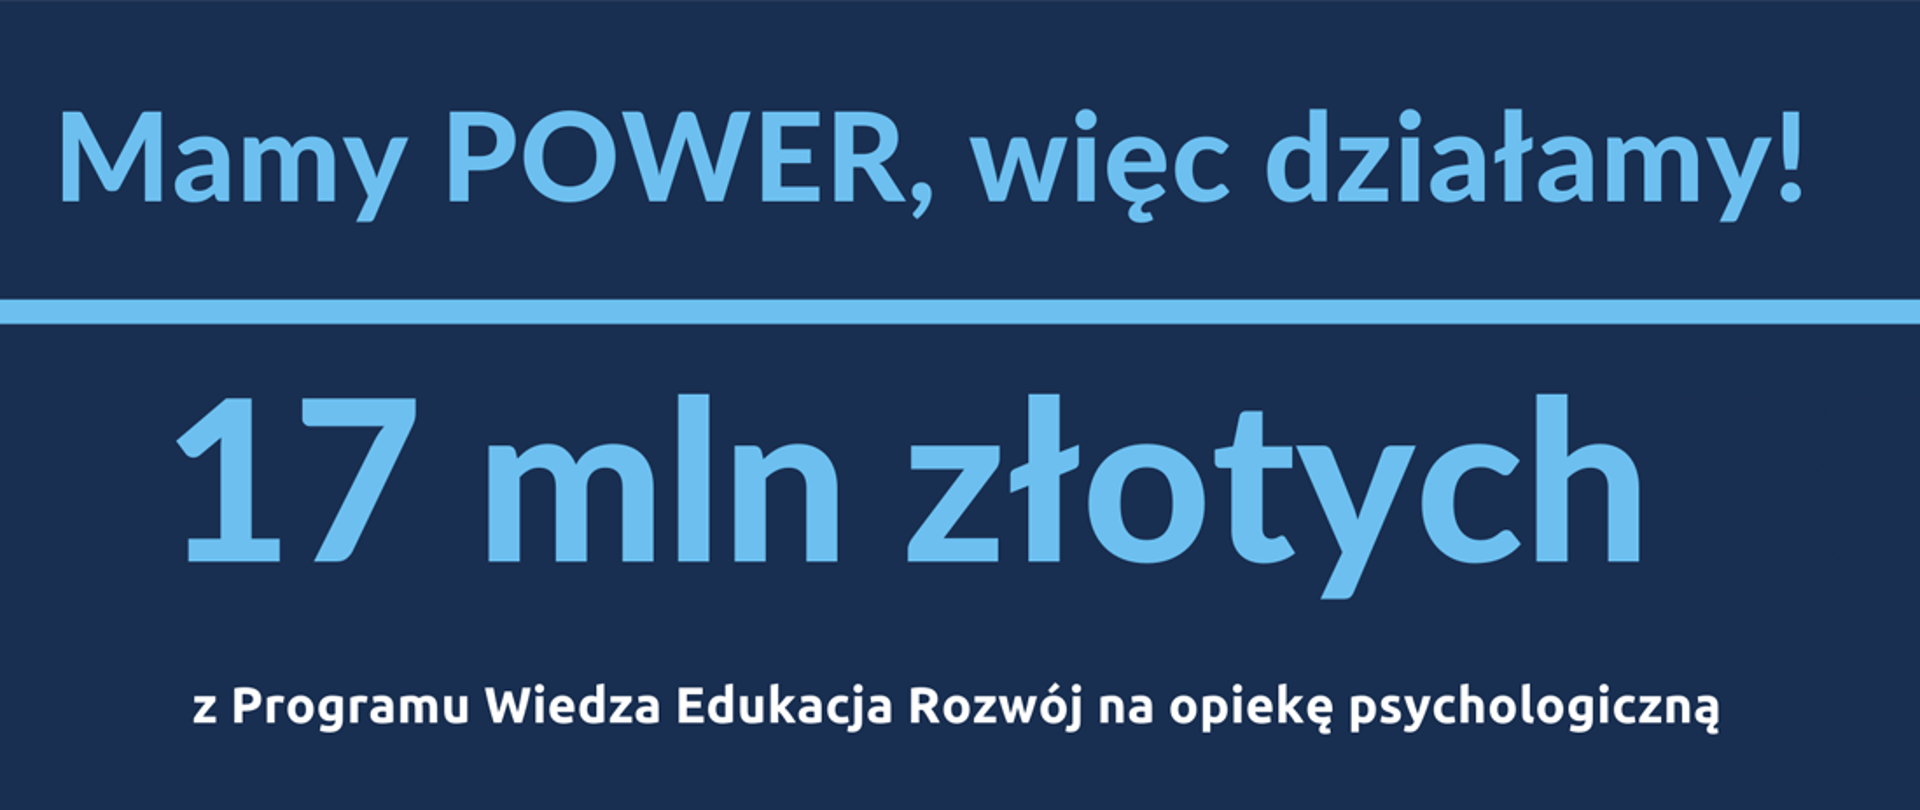 Na granatowym tle napis: Mamy POWER, więc działamy! 17 mln złotych z Programu Wiedza Edukacja Rozwój na opiekę psychologiczną